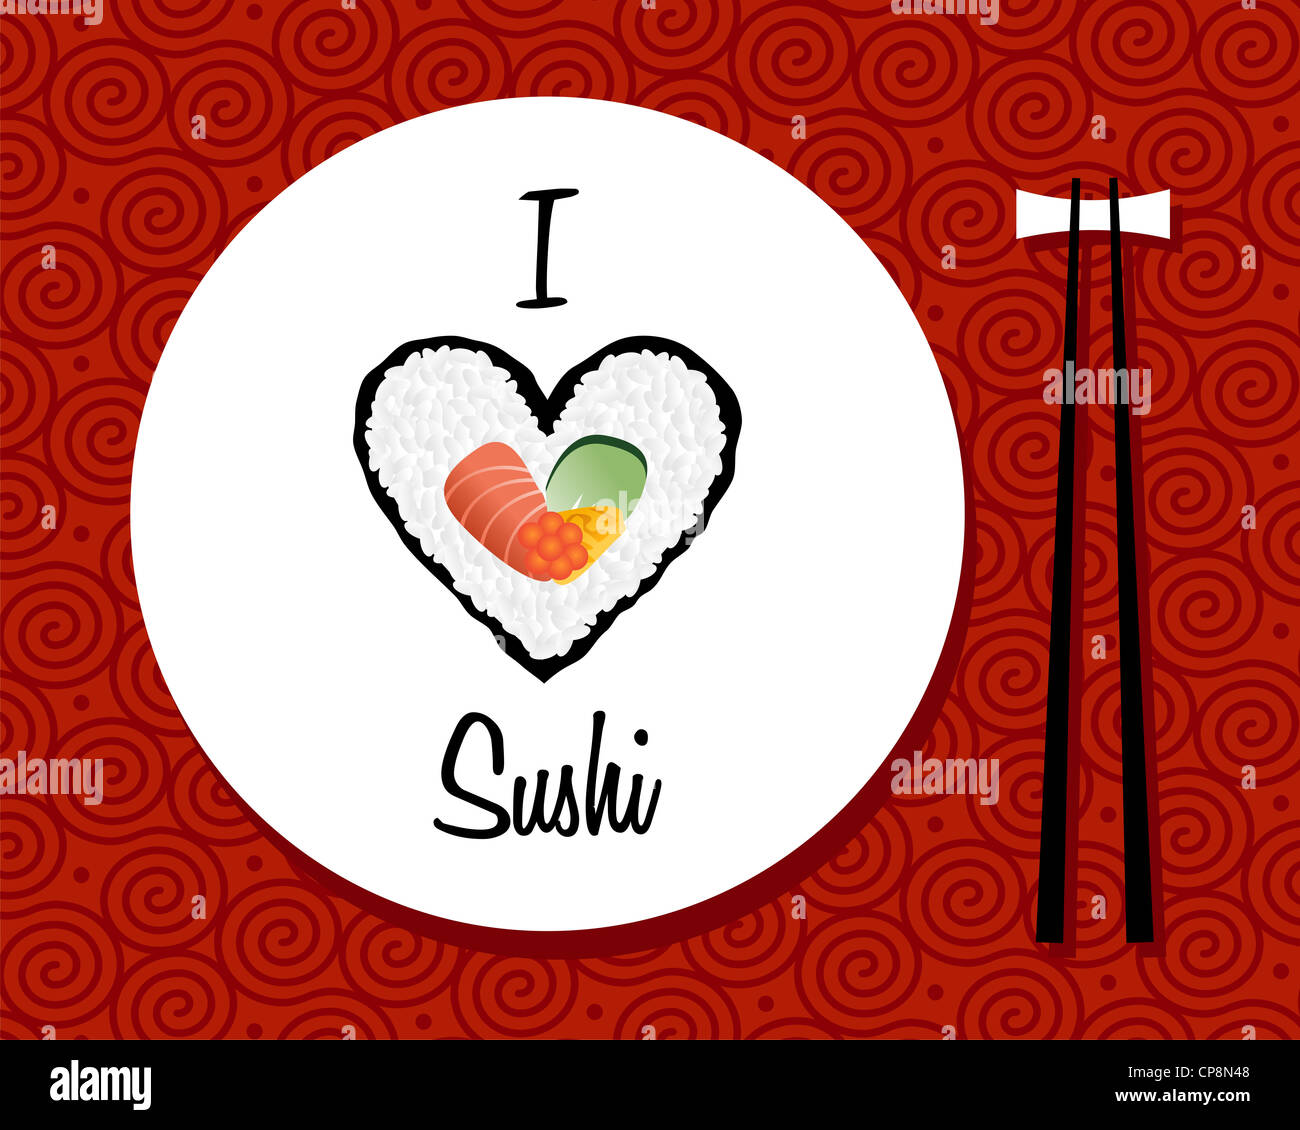 Ich liebe Sushi handschriftlich in weiße Schale auf rotem Grund. Vektor-Datei geschichtet für einfache Handhabung und individuelle Farbgebung. Stockfoto